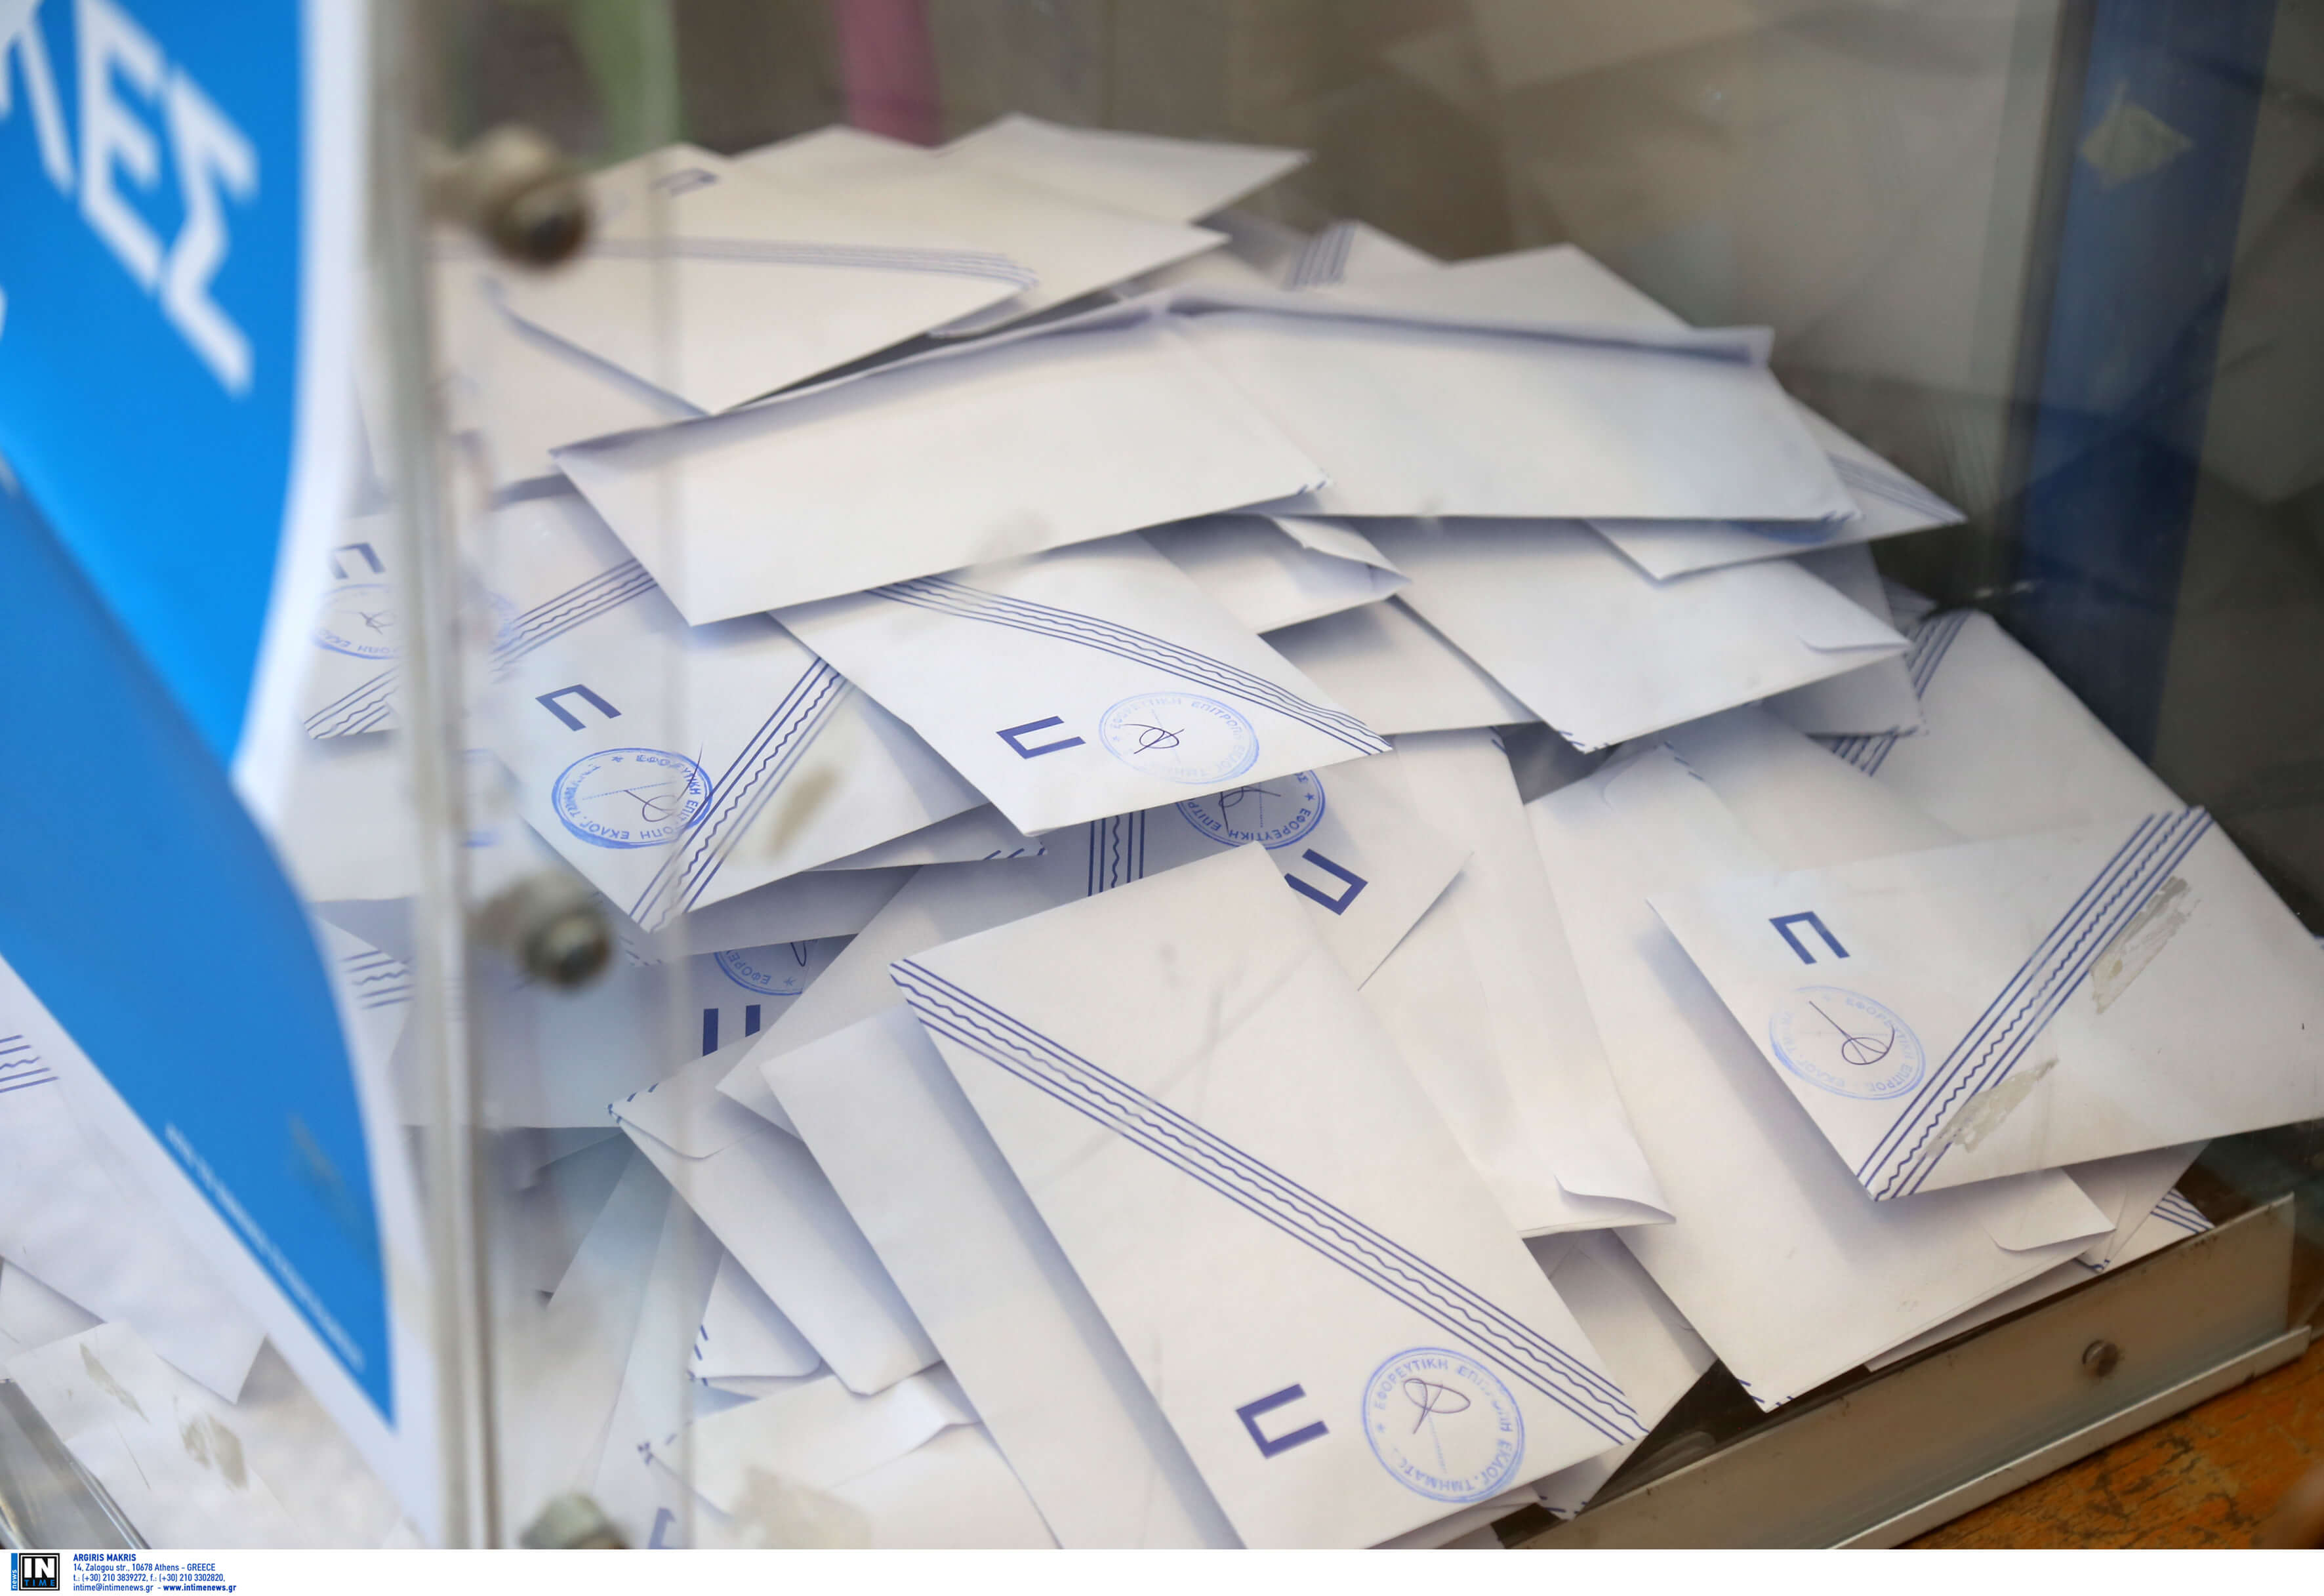 Αποτελέσματα Εκλογών – Κρήτη: Οι εκλογικοί σάκοι που δεν παραδόθηκαν στο Πρωτοδικείο – Κόλλησε η διαδικασία!